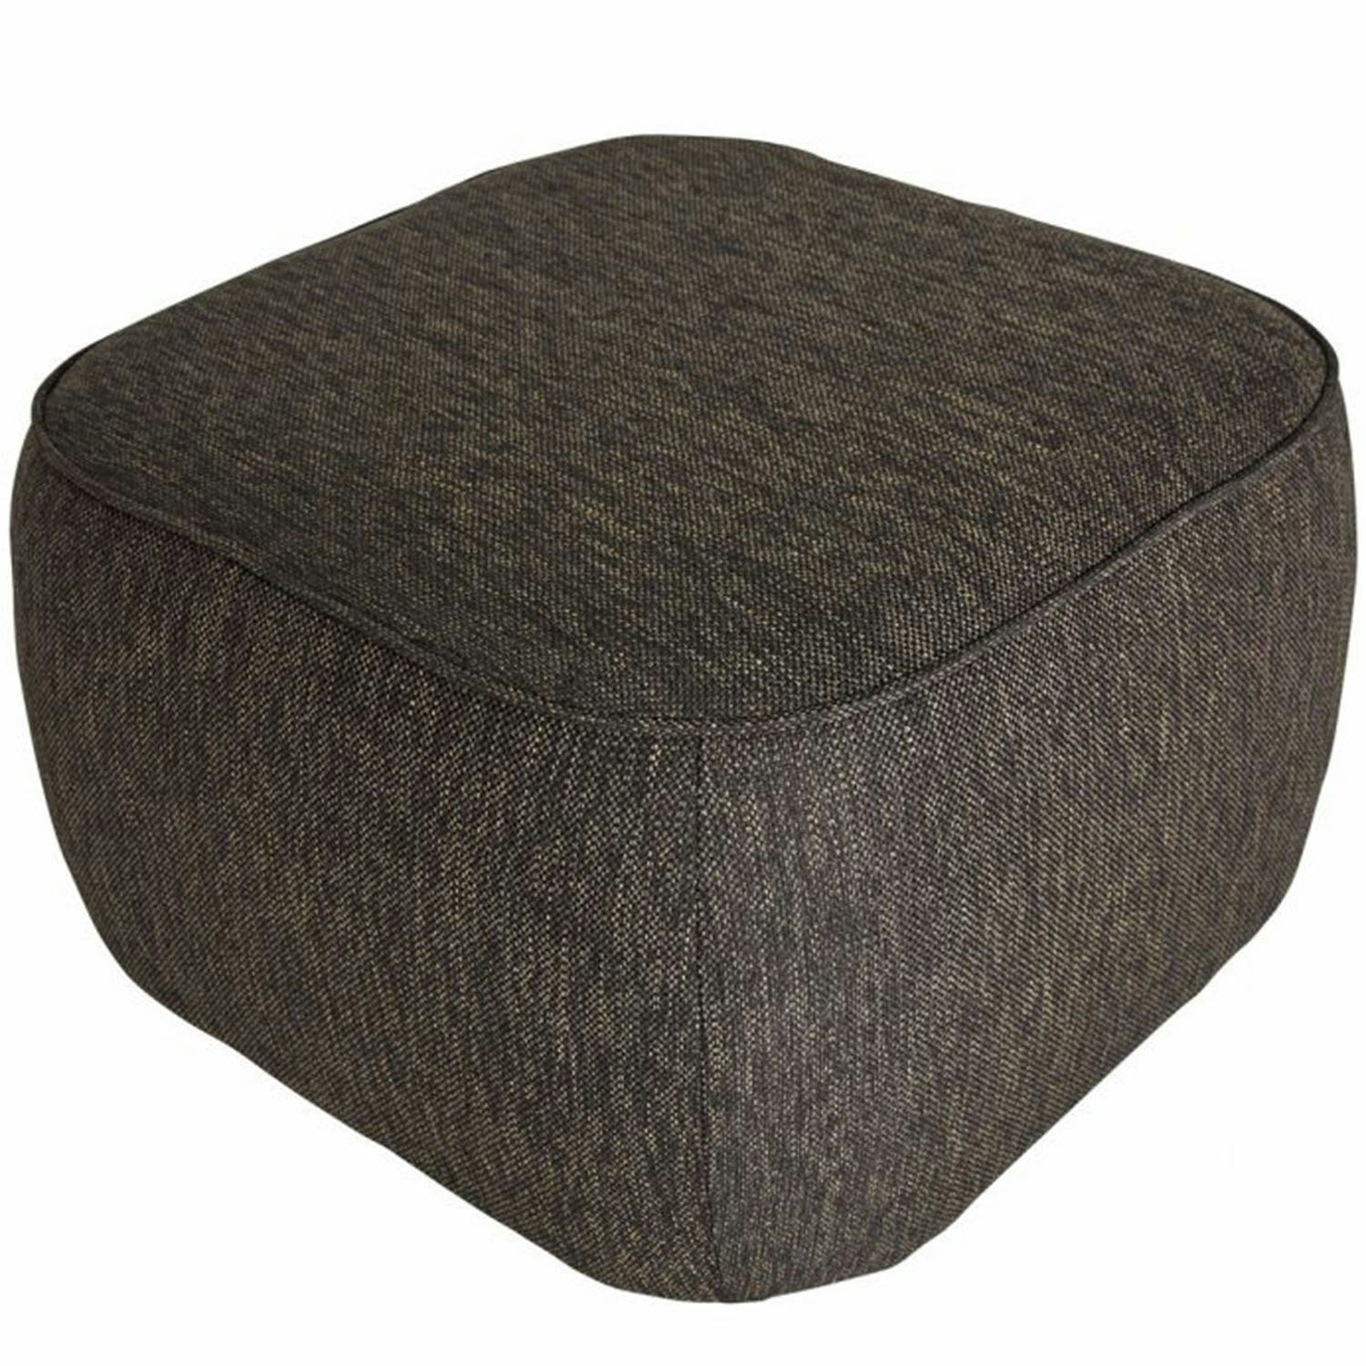 Cube Pouf, Brown